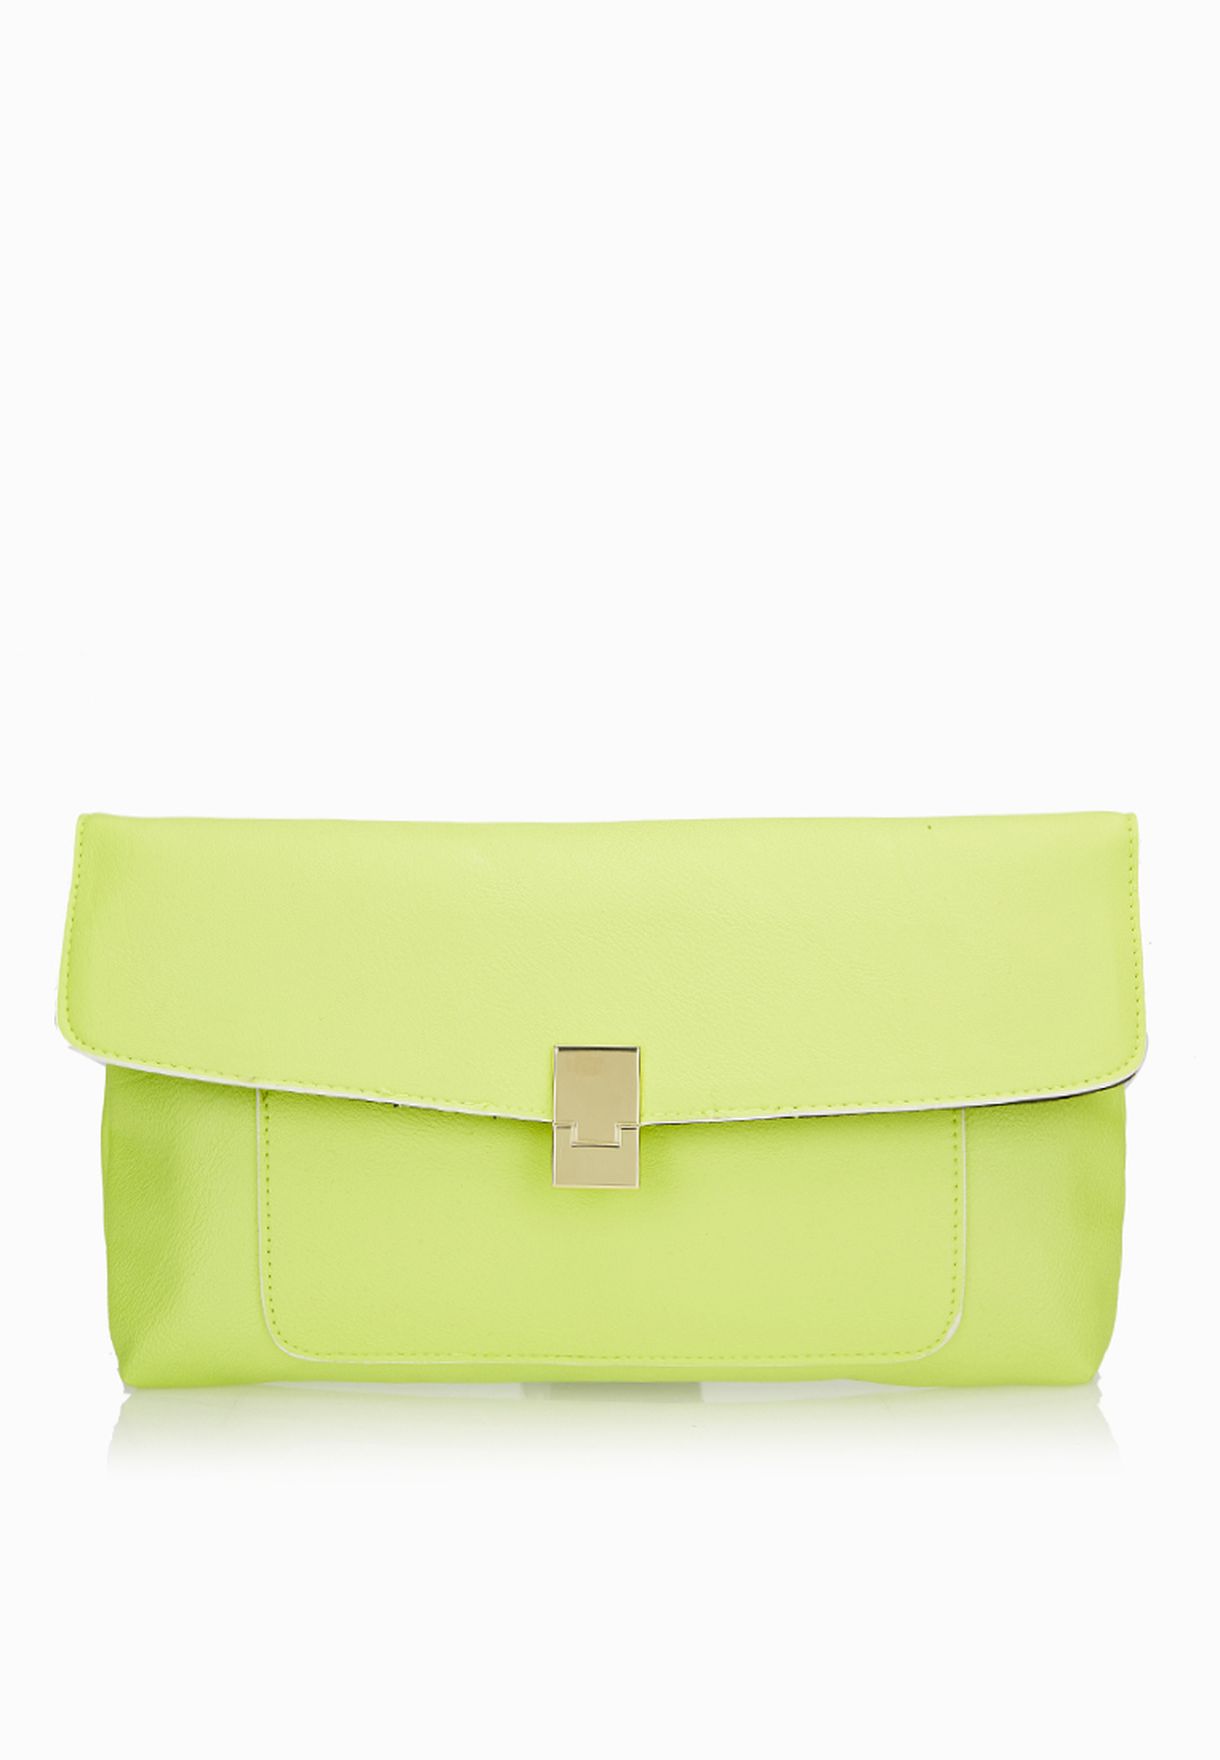 green clutch bag dorothy perkins